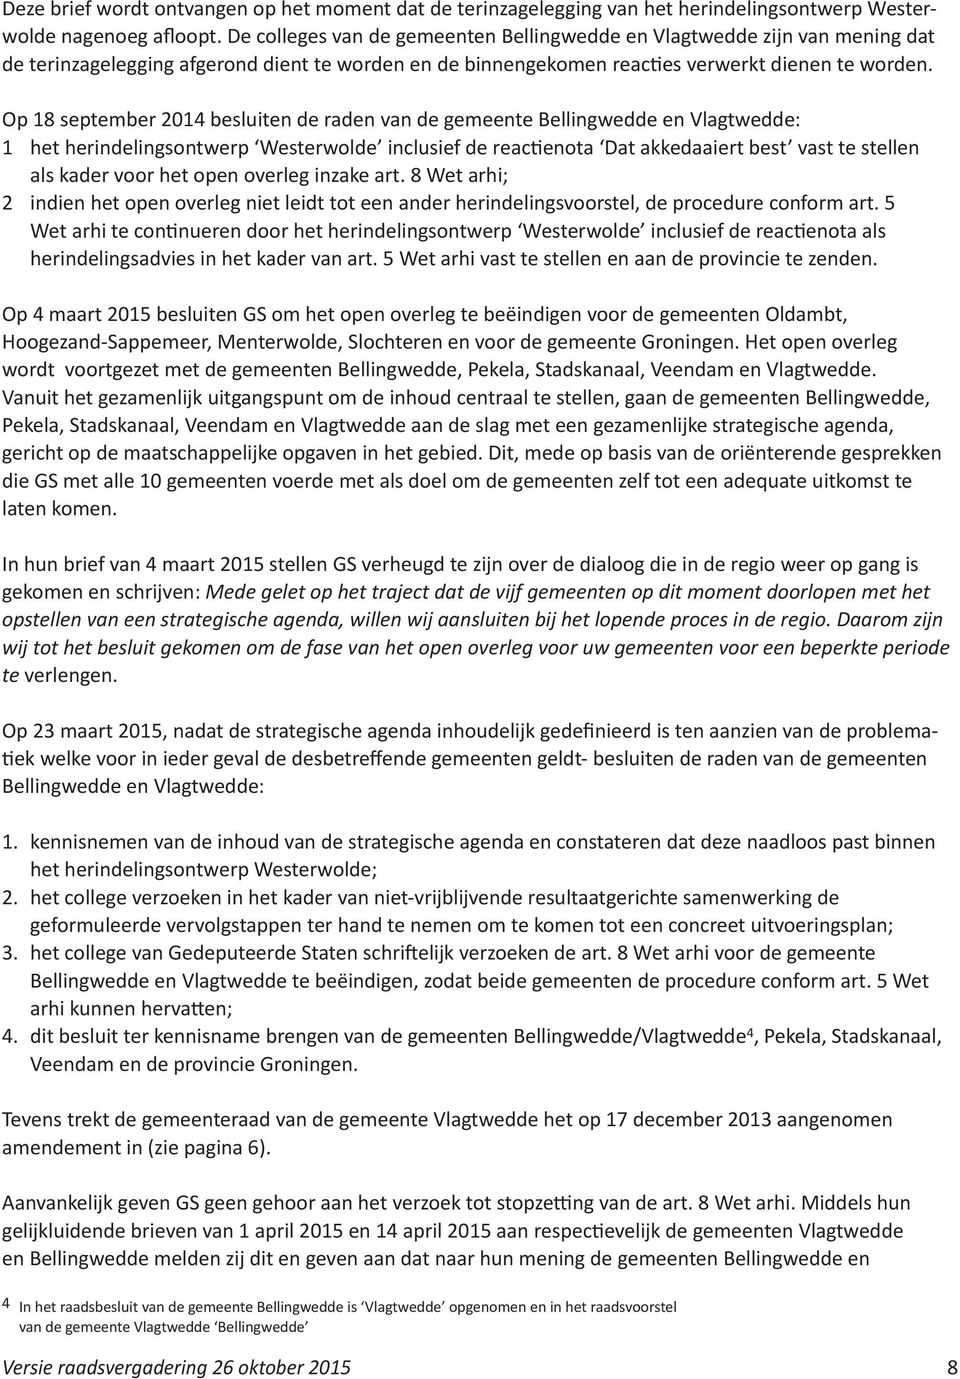 Op 18 september 2014 besluiten de raden van de gemeente Bellingwedde en Vlagtwedde: 1 het herindelingsontwerp Westerwolde inclusief de reactienota Dat akkedaaiert best vast te stellen als kader voor